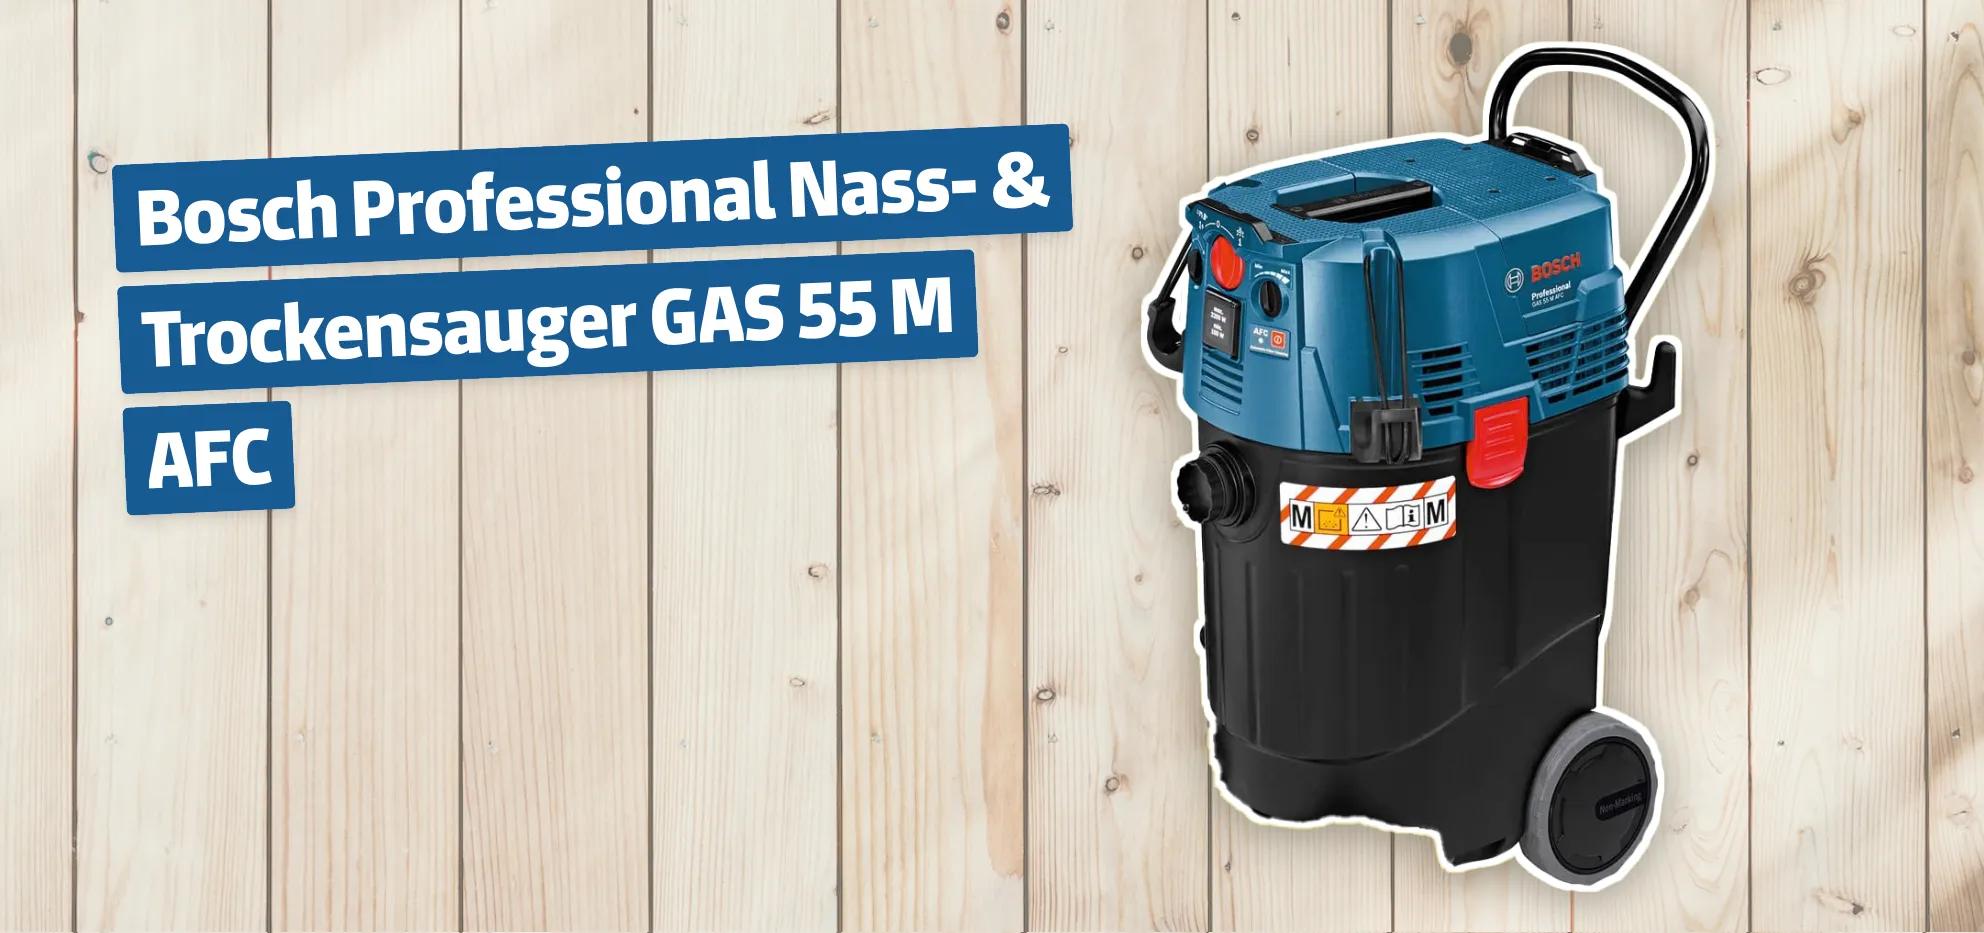 Bosch Professional Nass- & Trockensauger GAS 55 M AFC